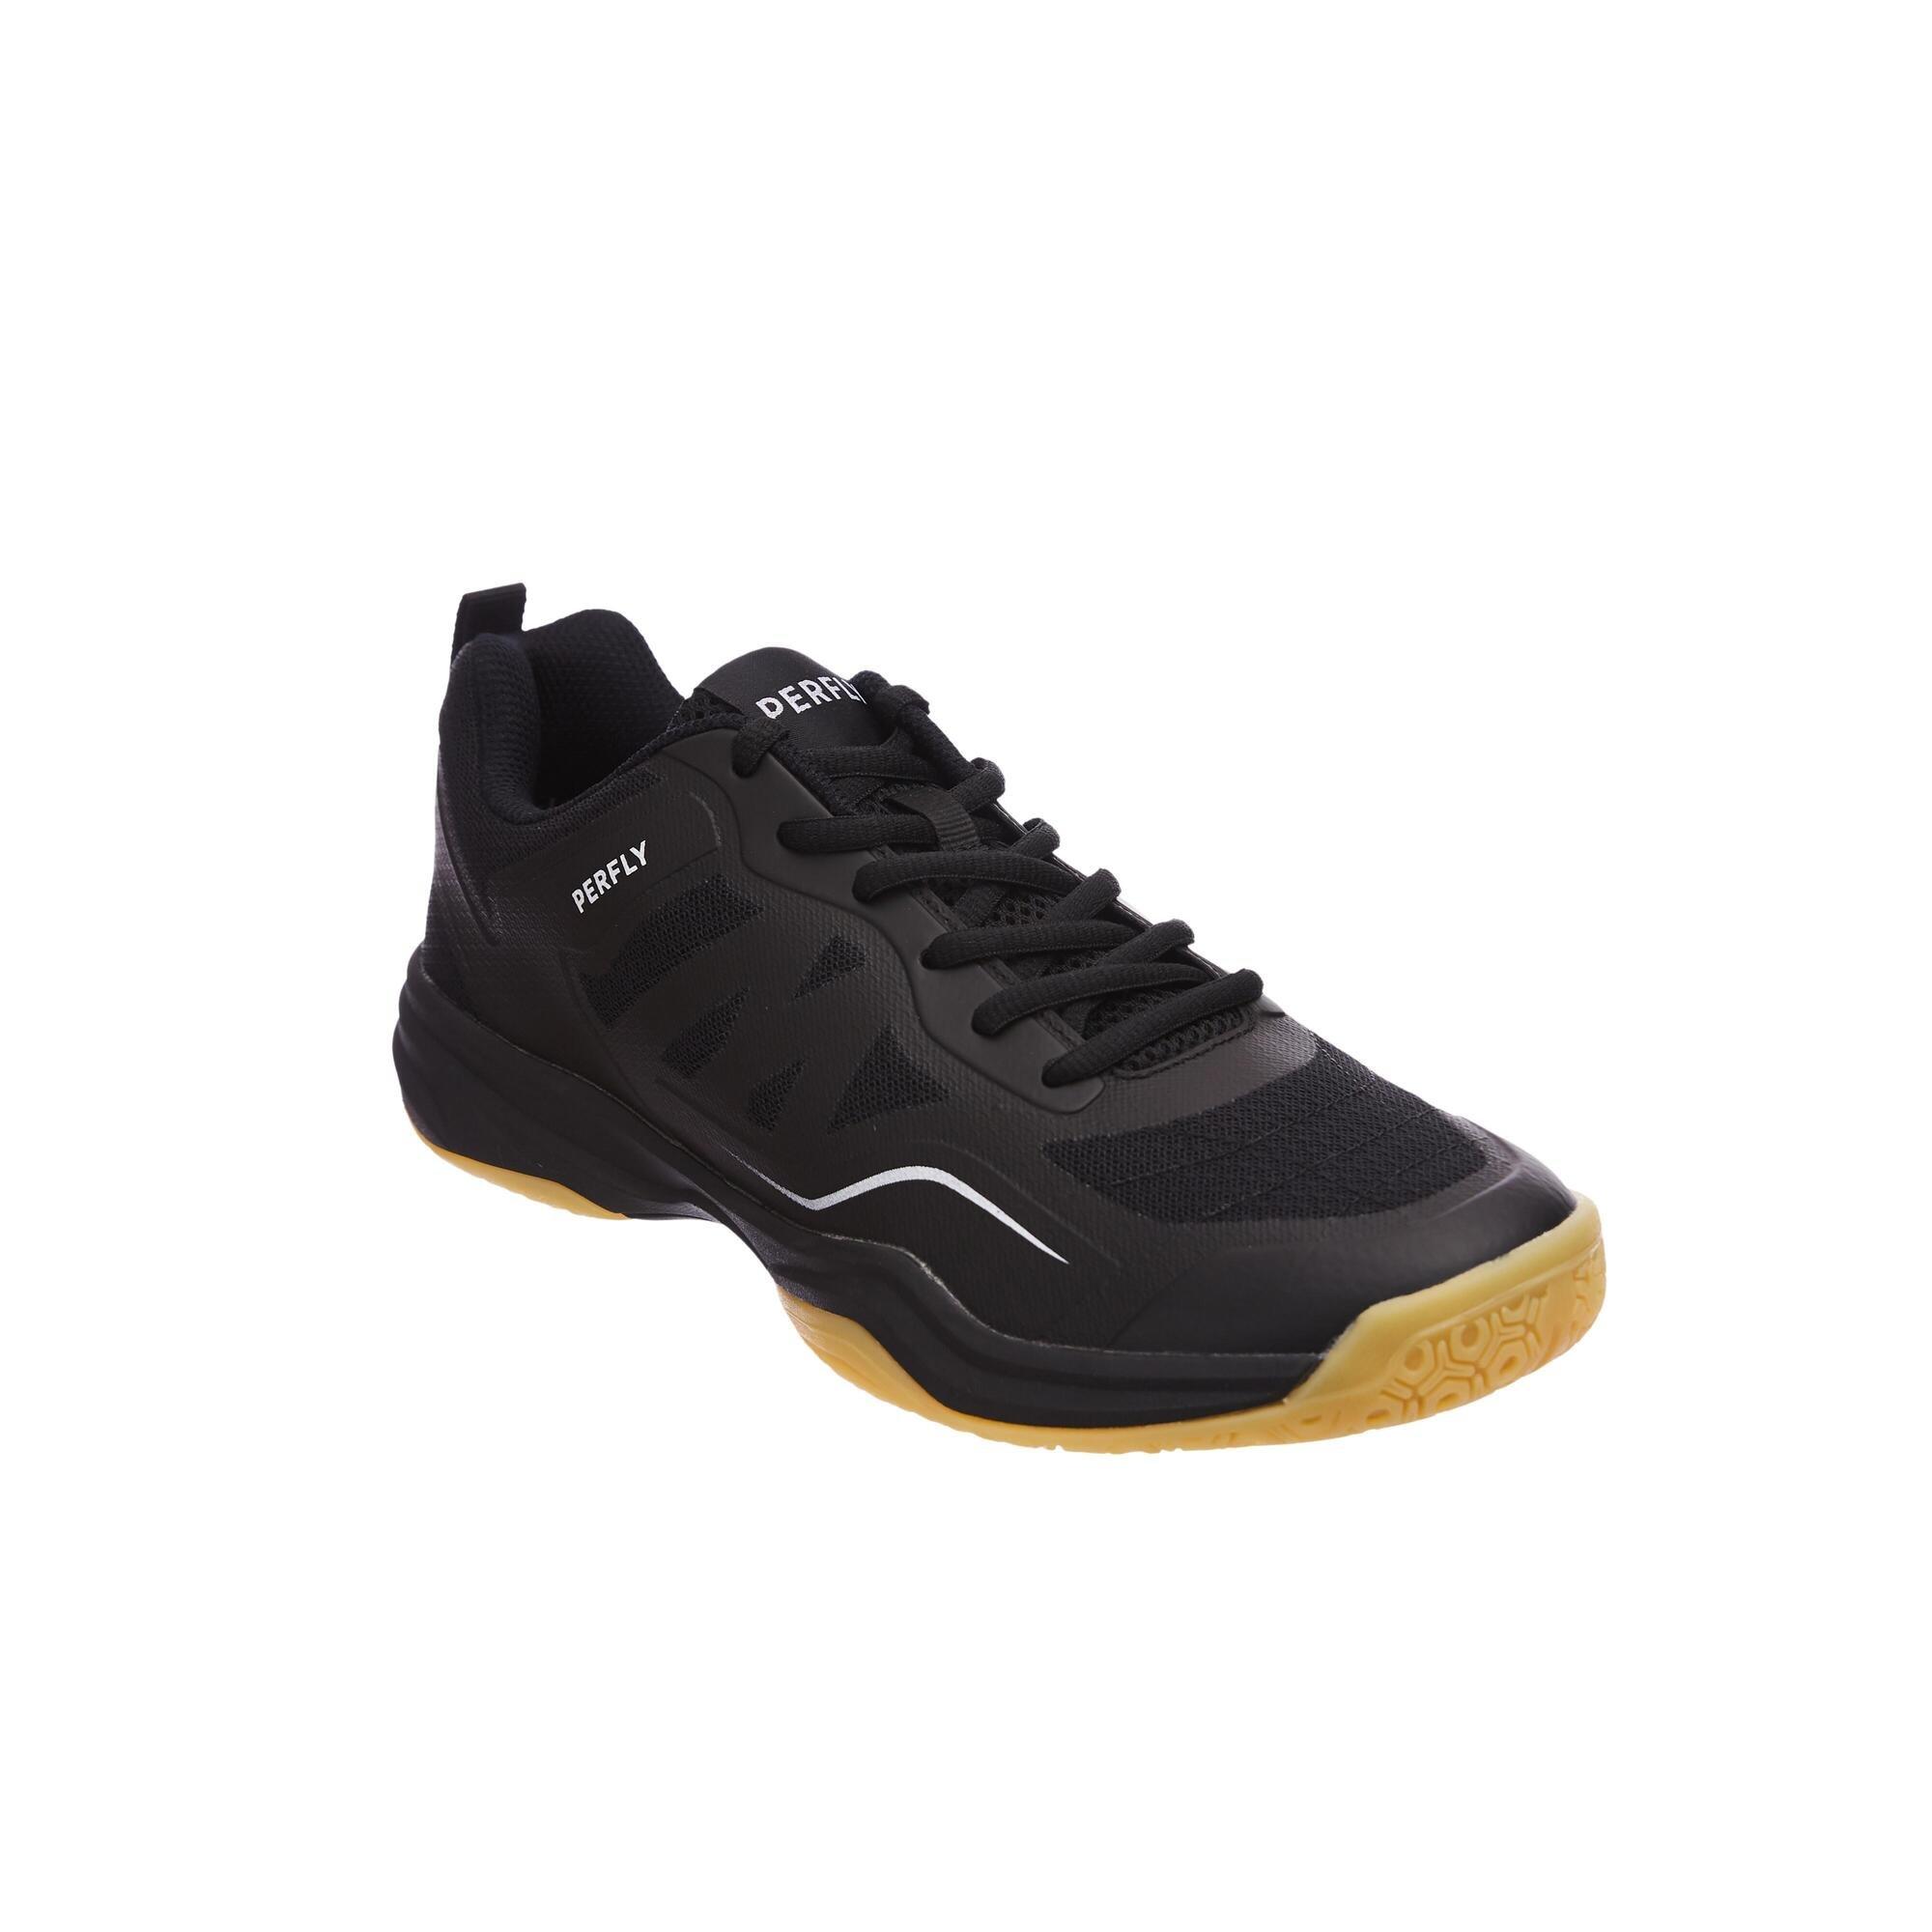 Спортивные кроссовки Decathlon Badminton Shoes Bs 530 Perfly, черный